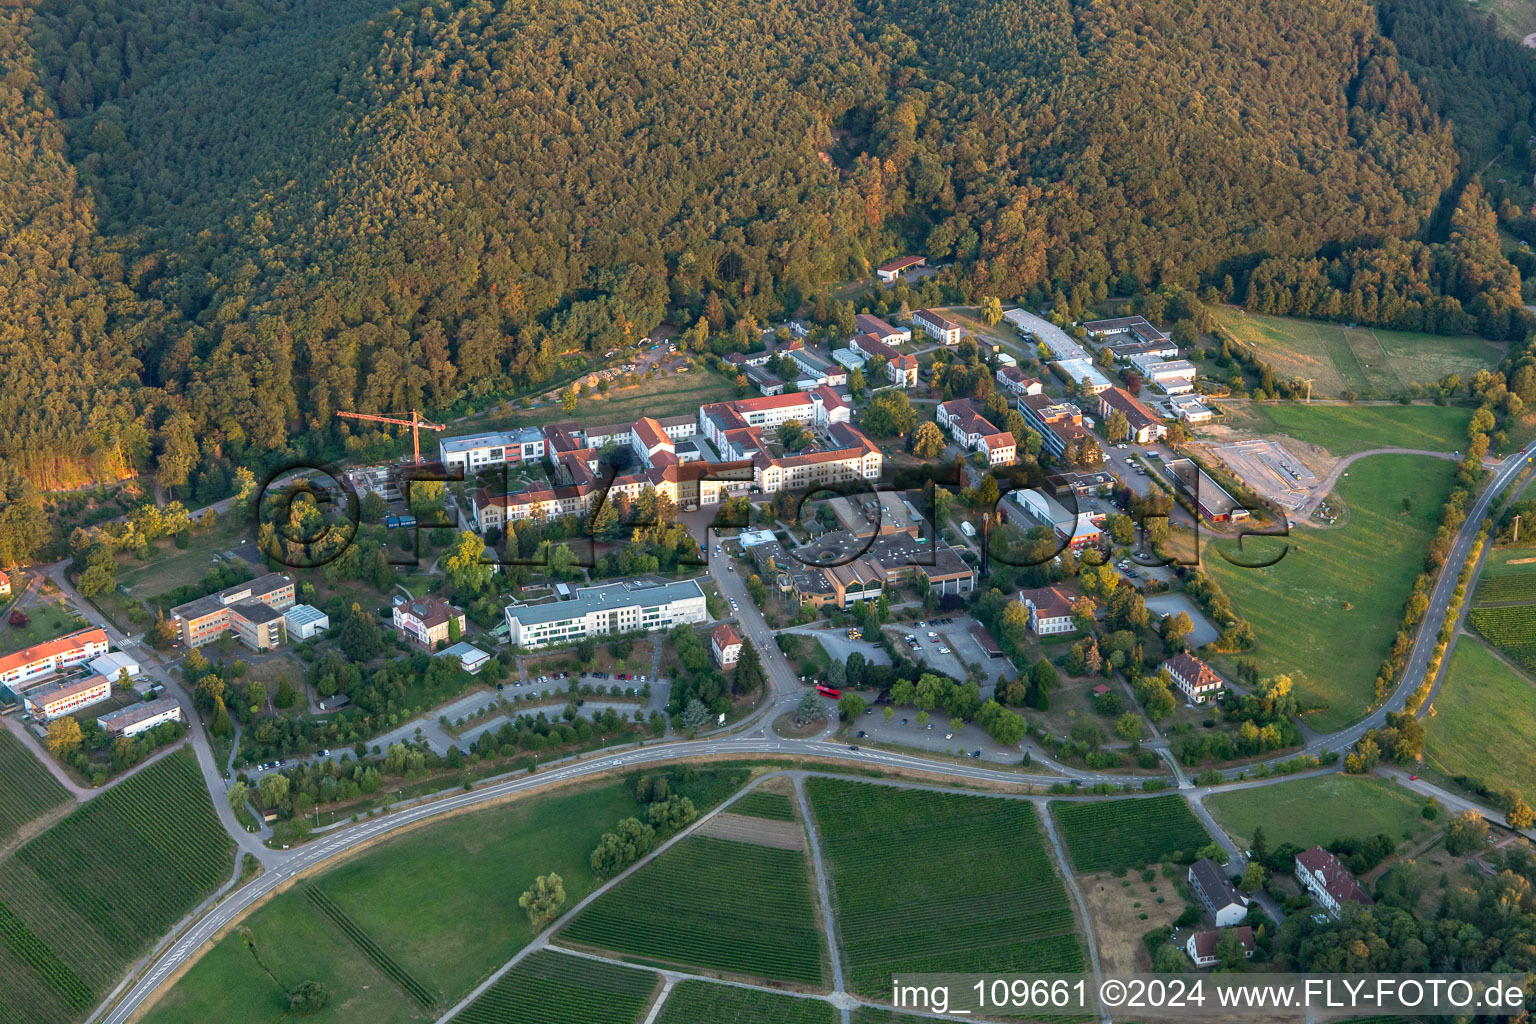 Luftbild von Psyschatrische Landesklinik in Klingenmünster im Bundesland Rheinland-Pfalz, Deutschland